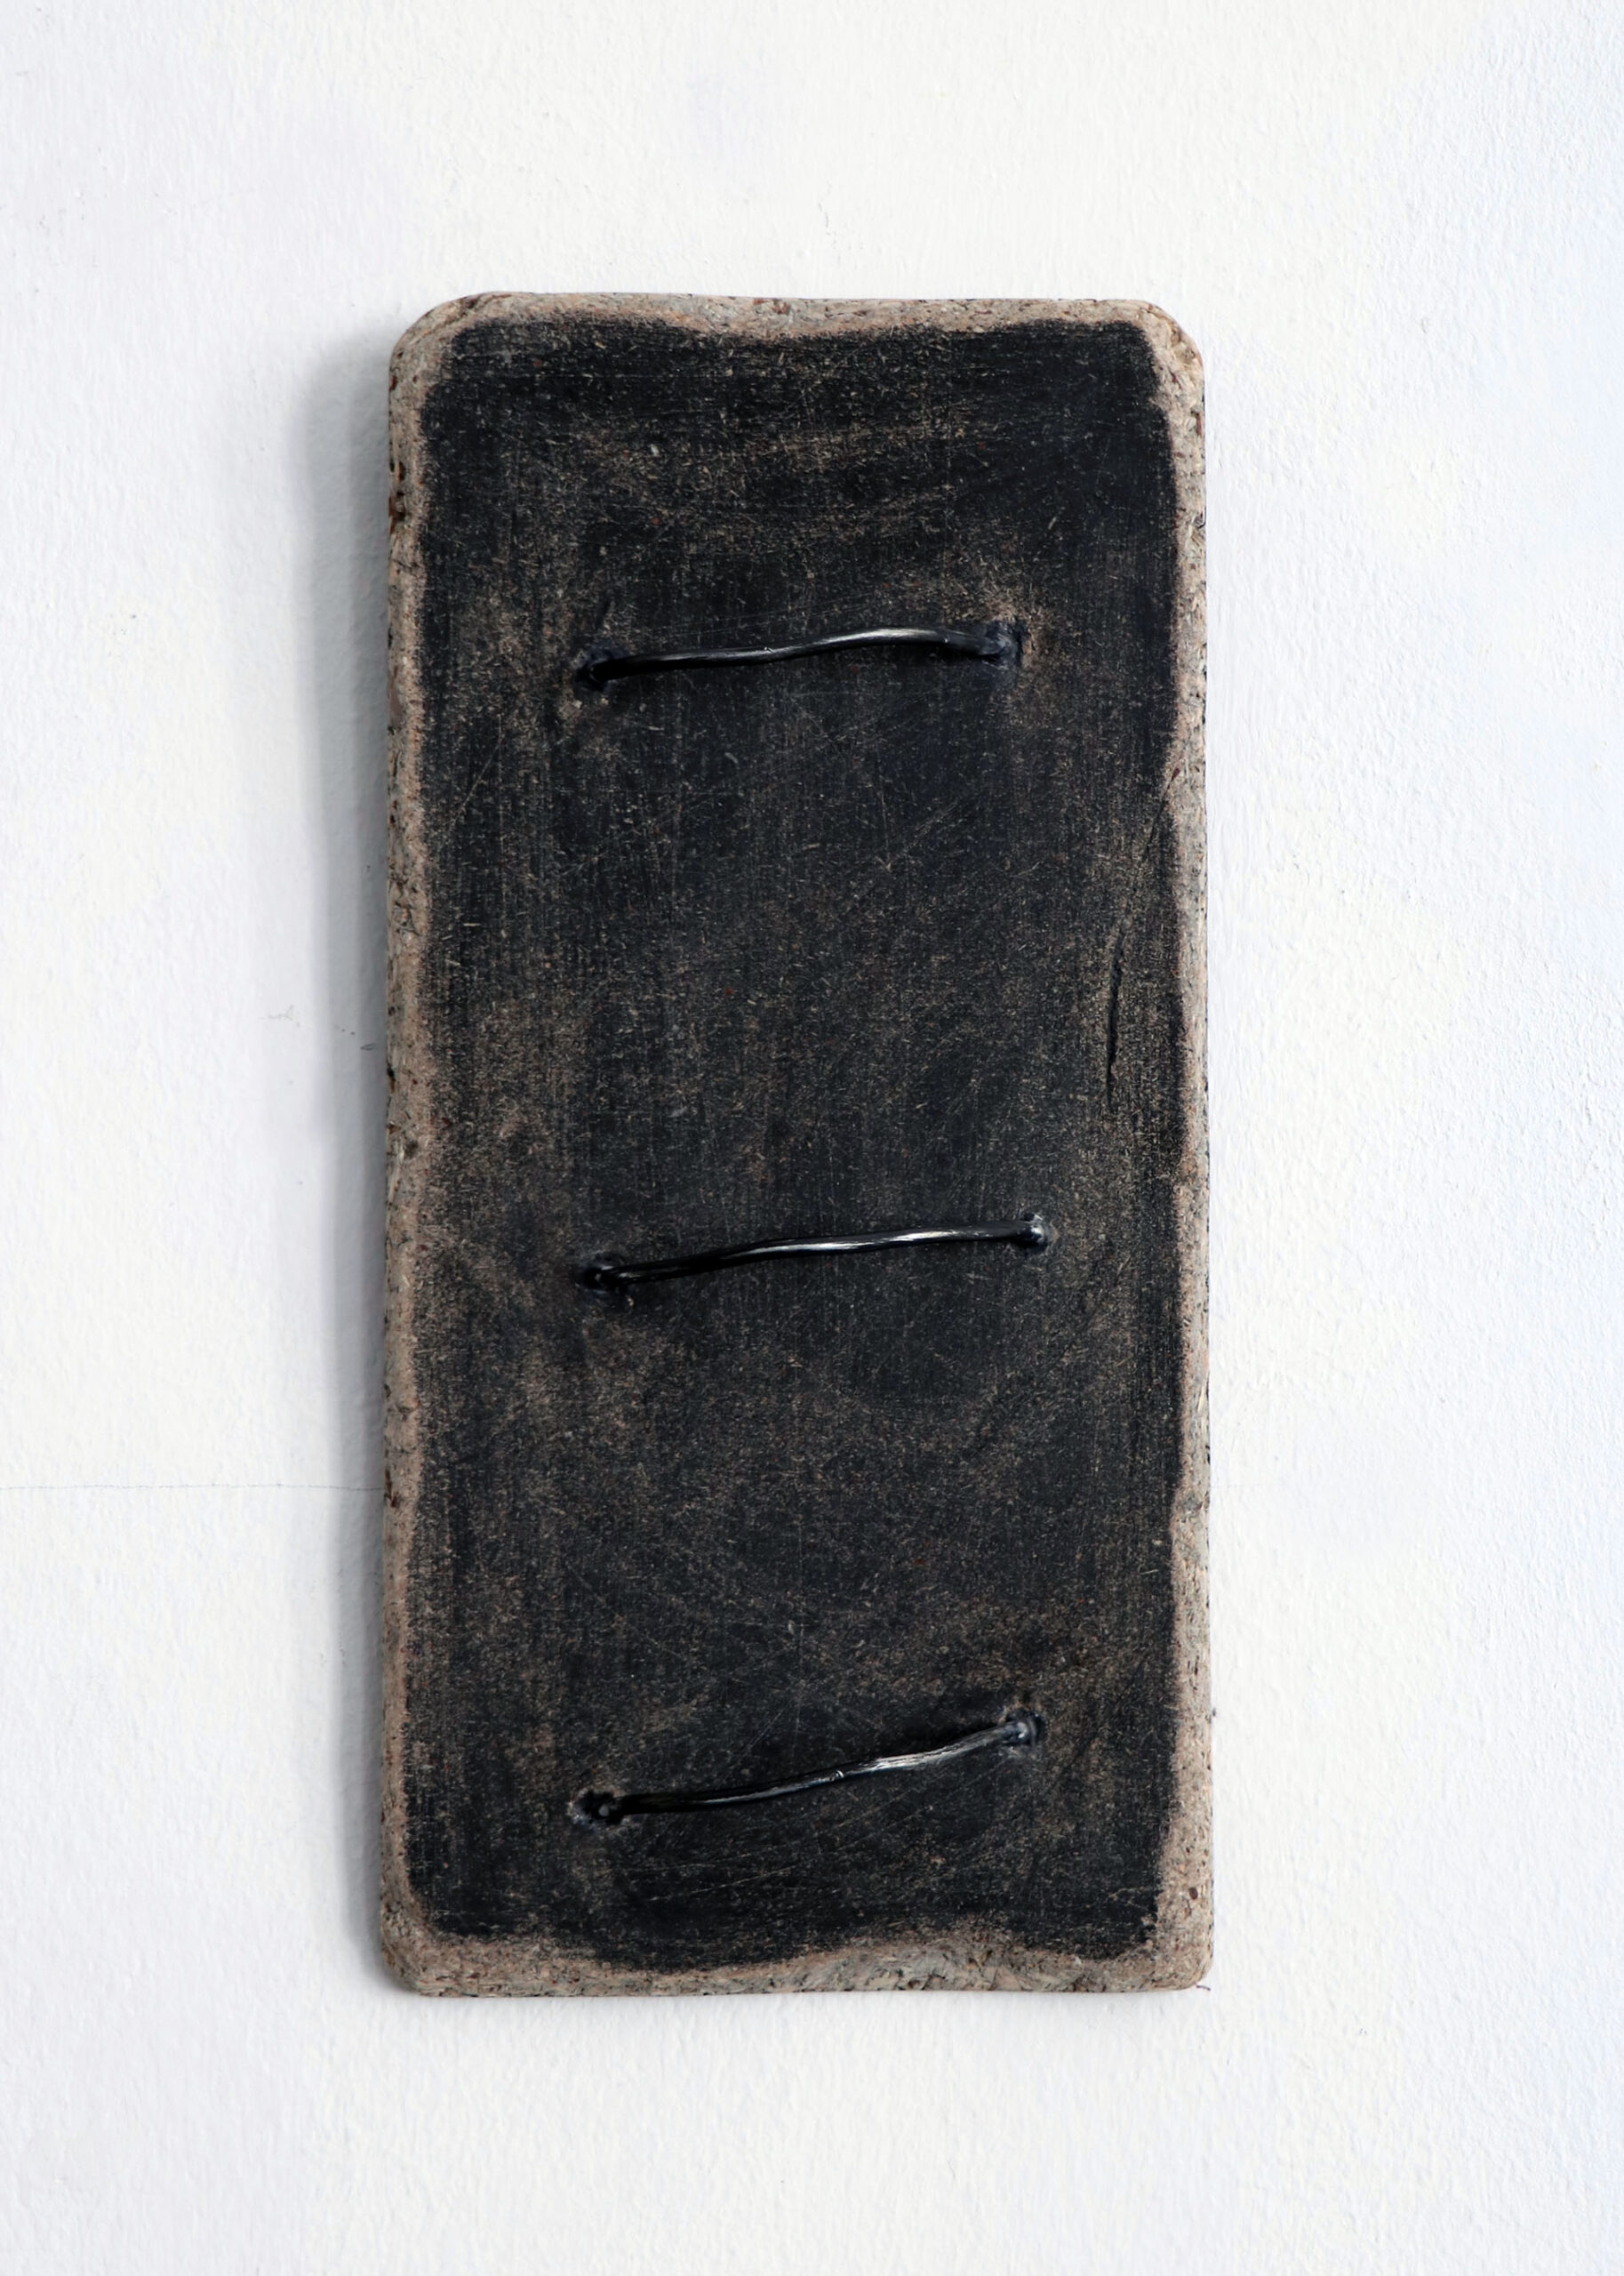 Zdjęcie przedstawia ciemną drewnianą, prostokątną płytkę z wystającymi metalowymi elementami